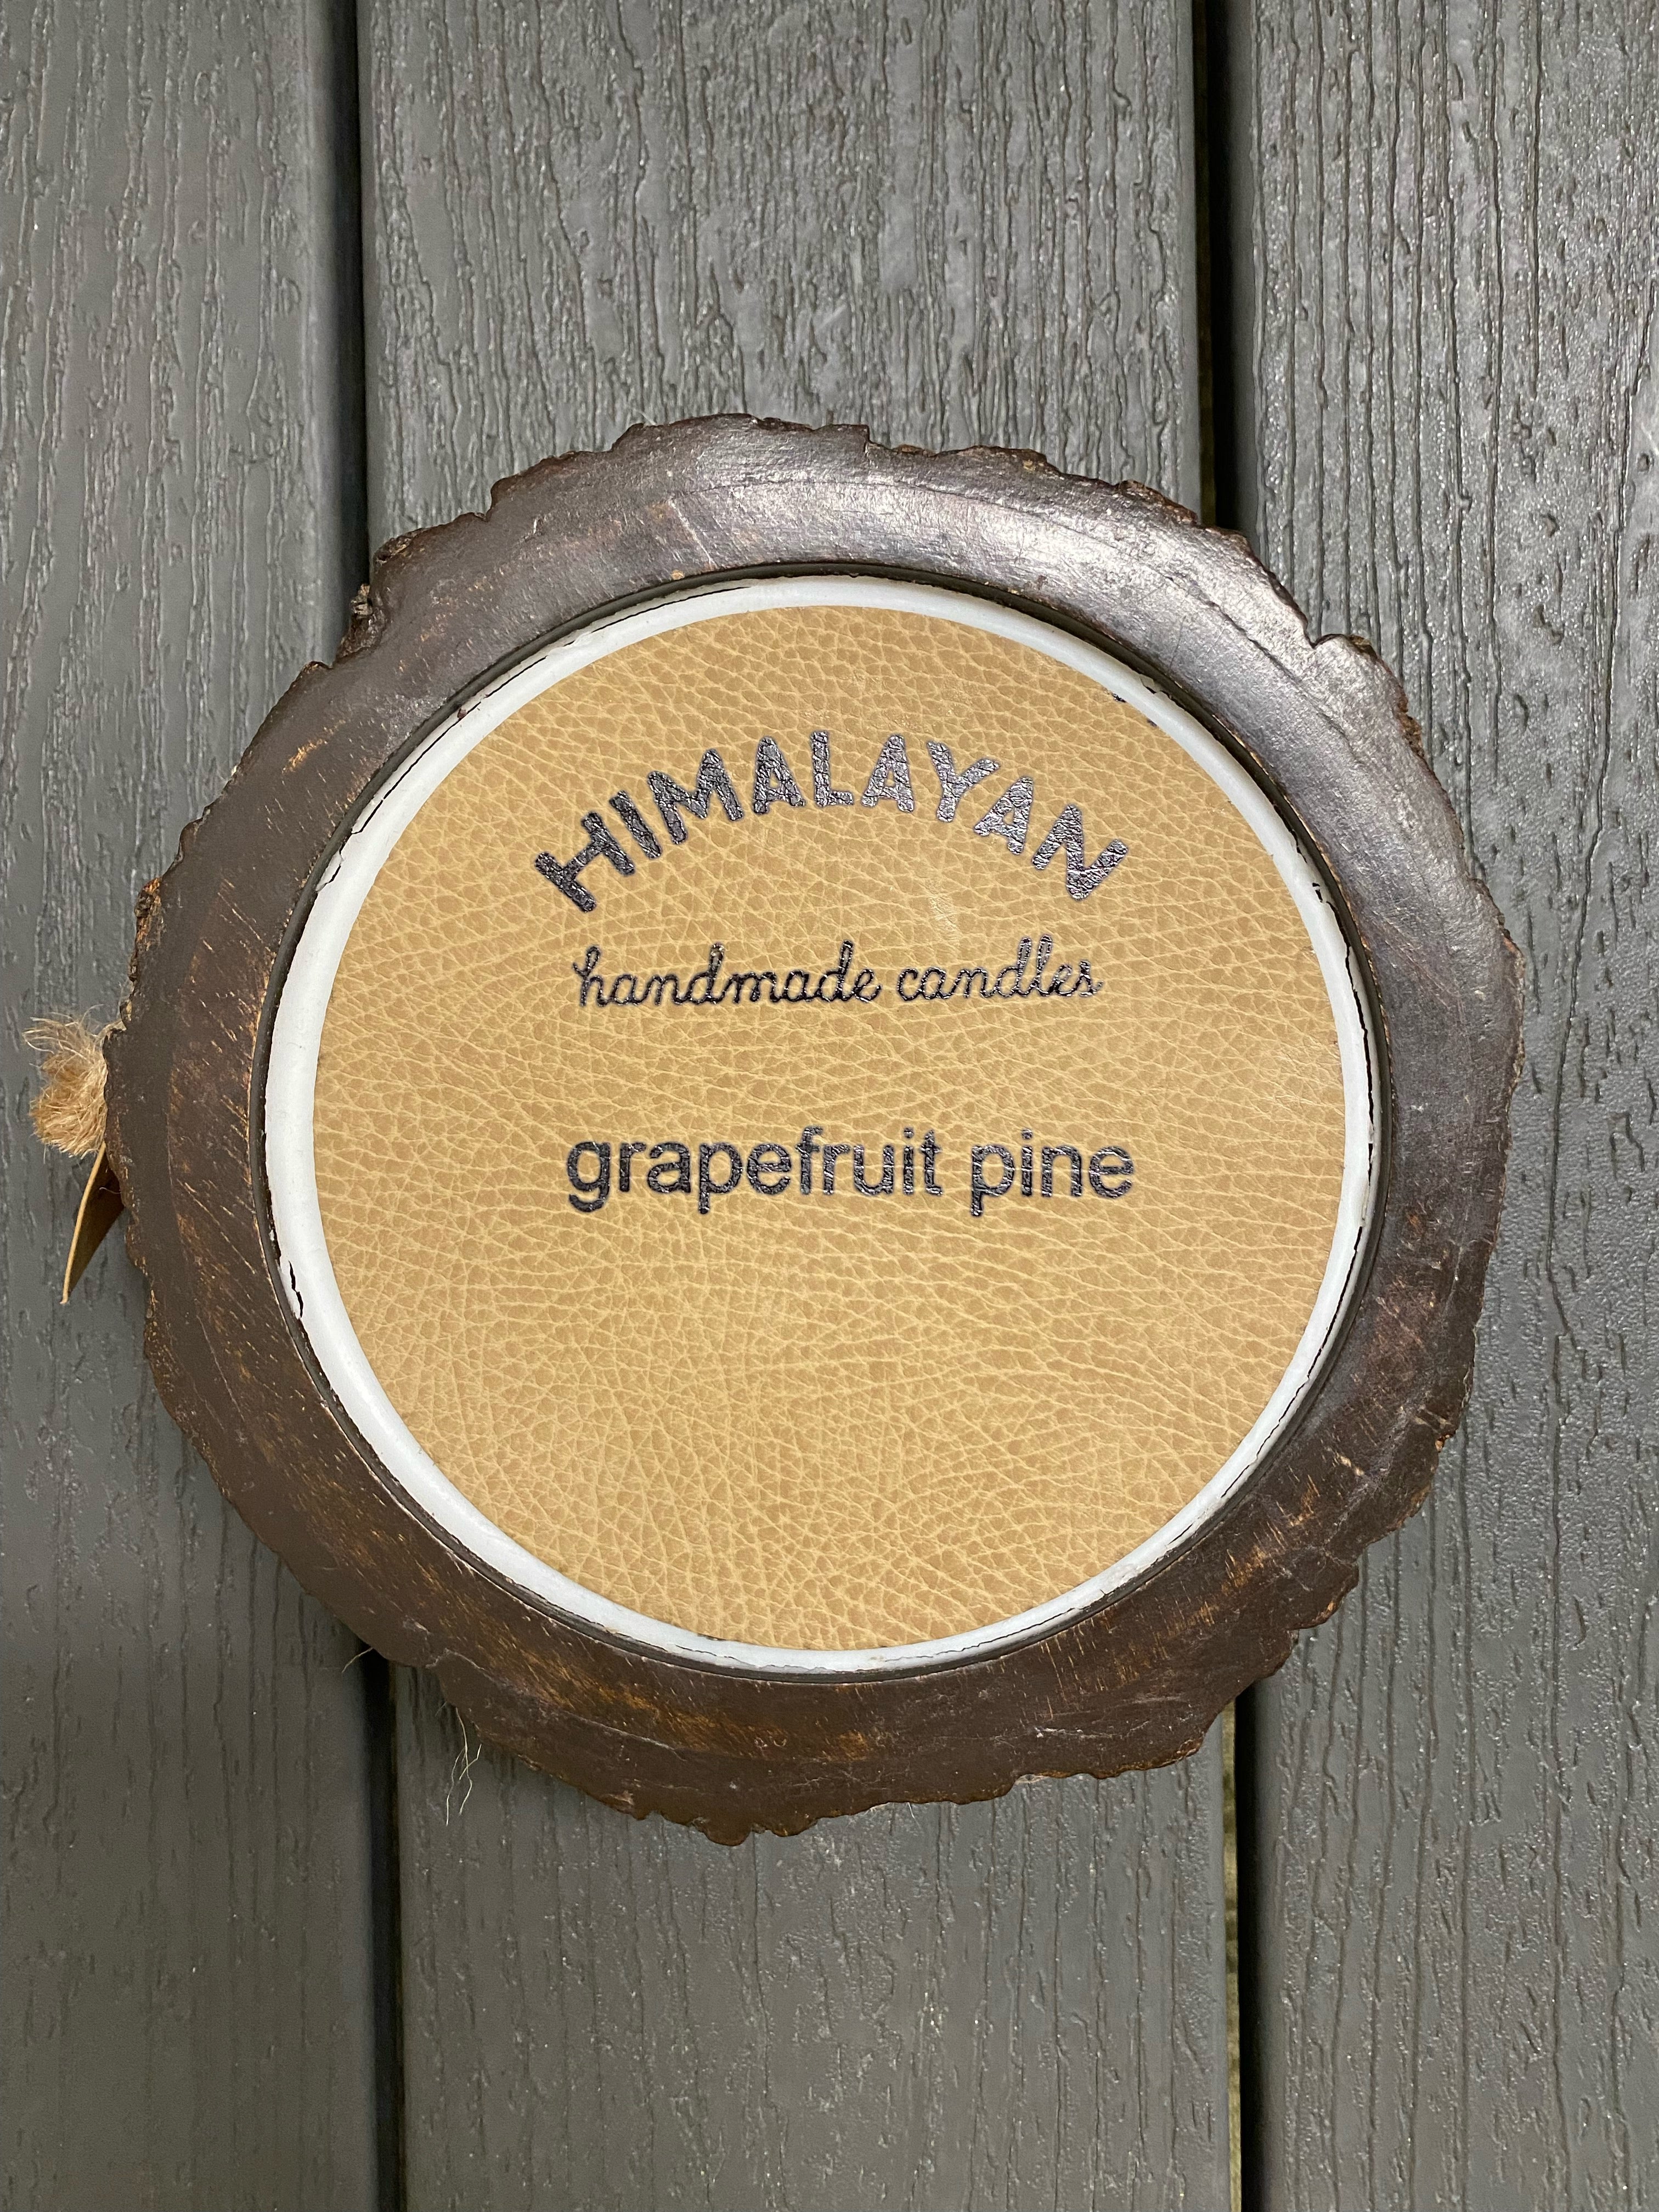 Himalayan Tree Bark Pot Candle - Medium - Grapefruit Pine top